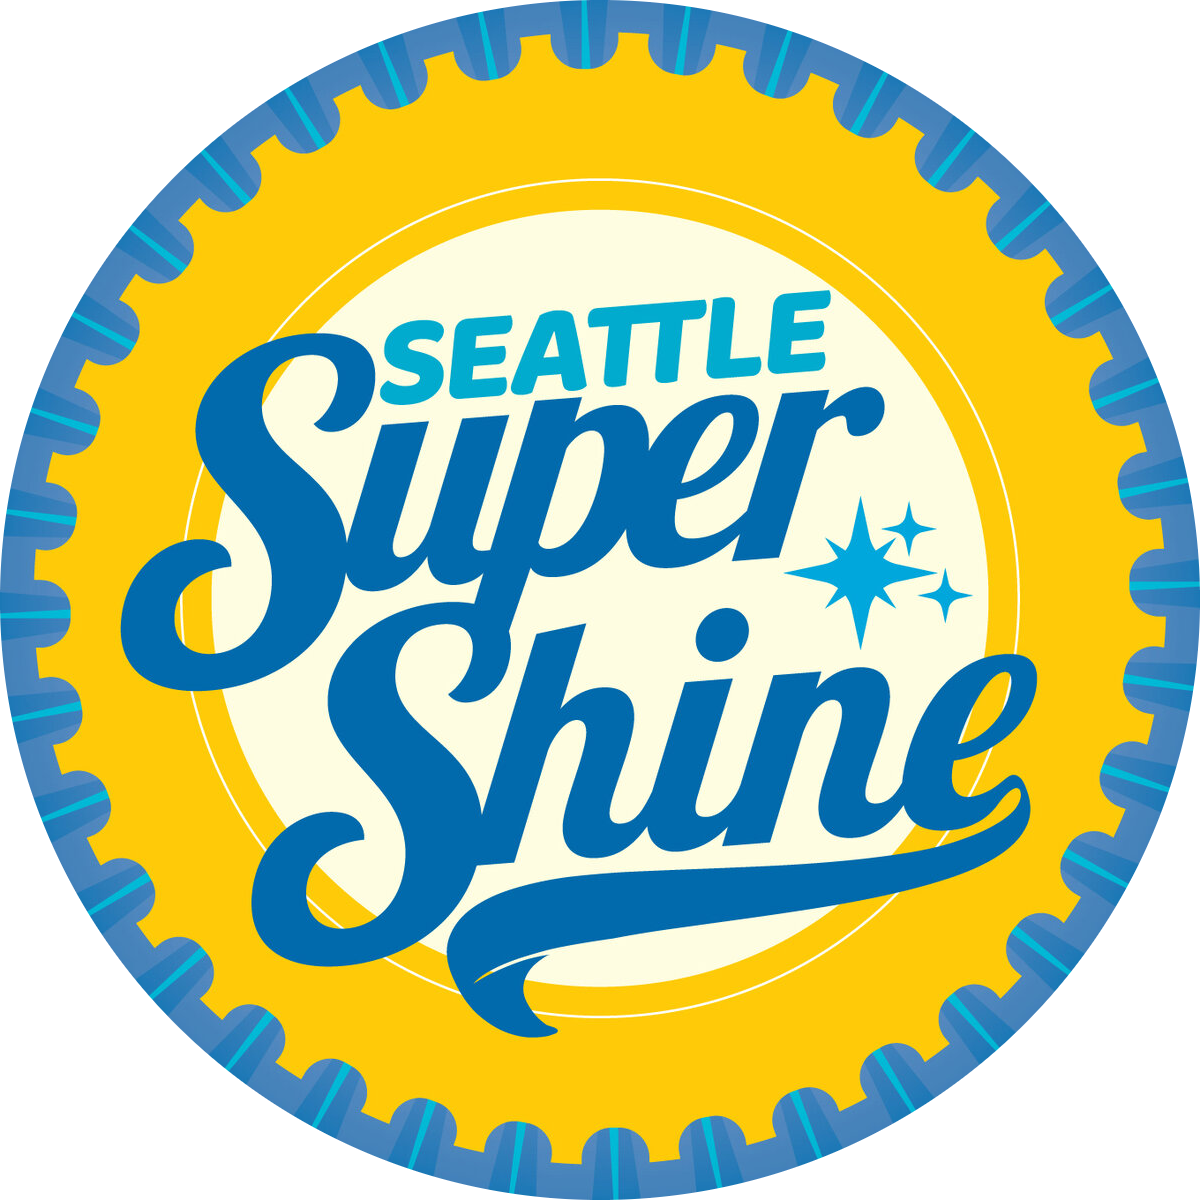 Seattle Super Shine